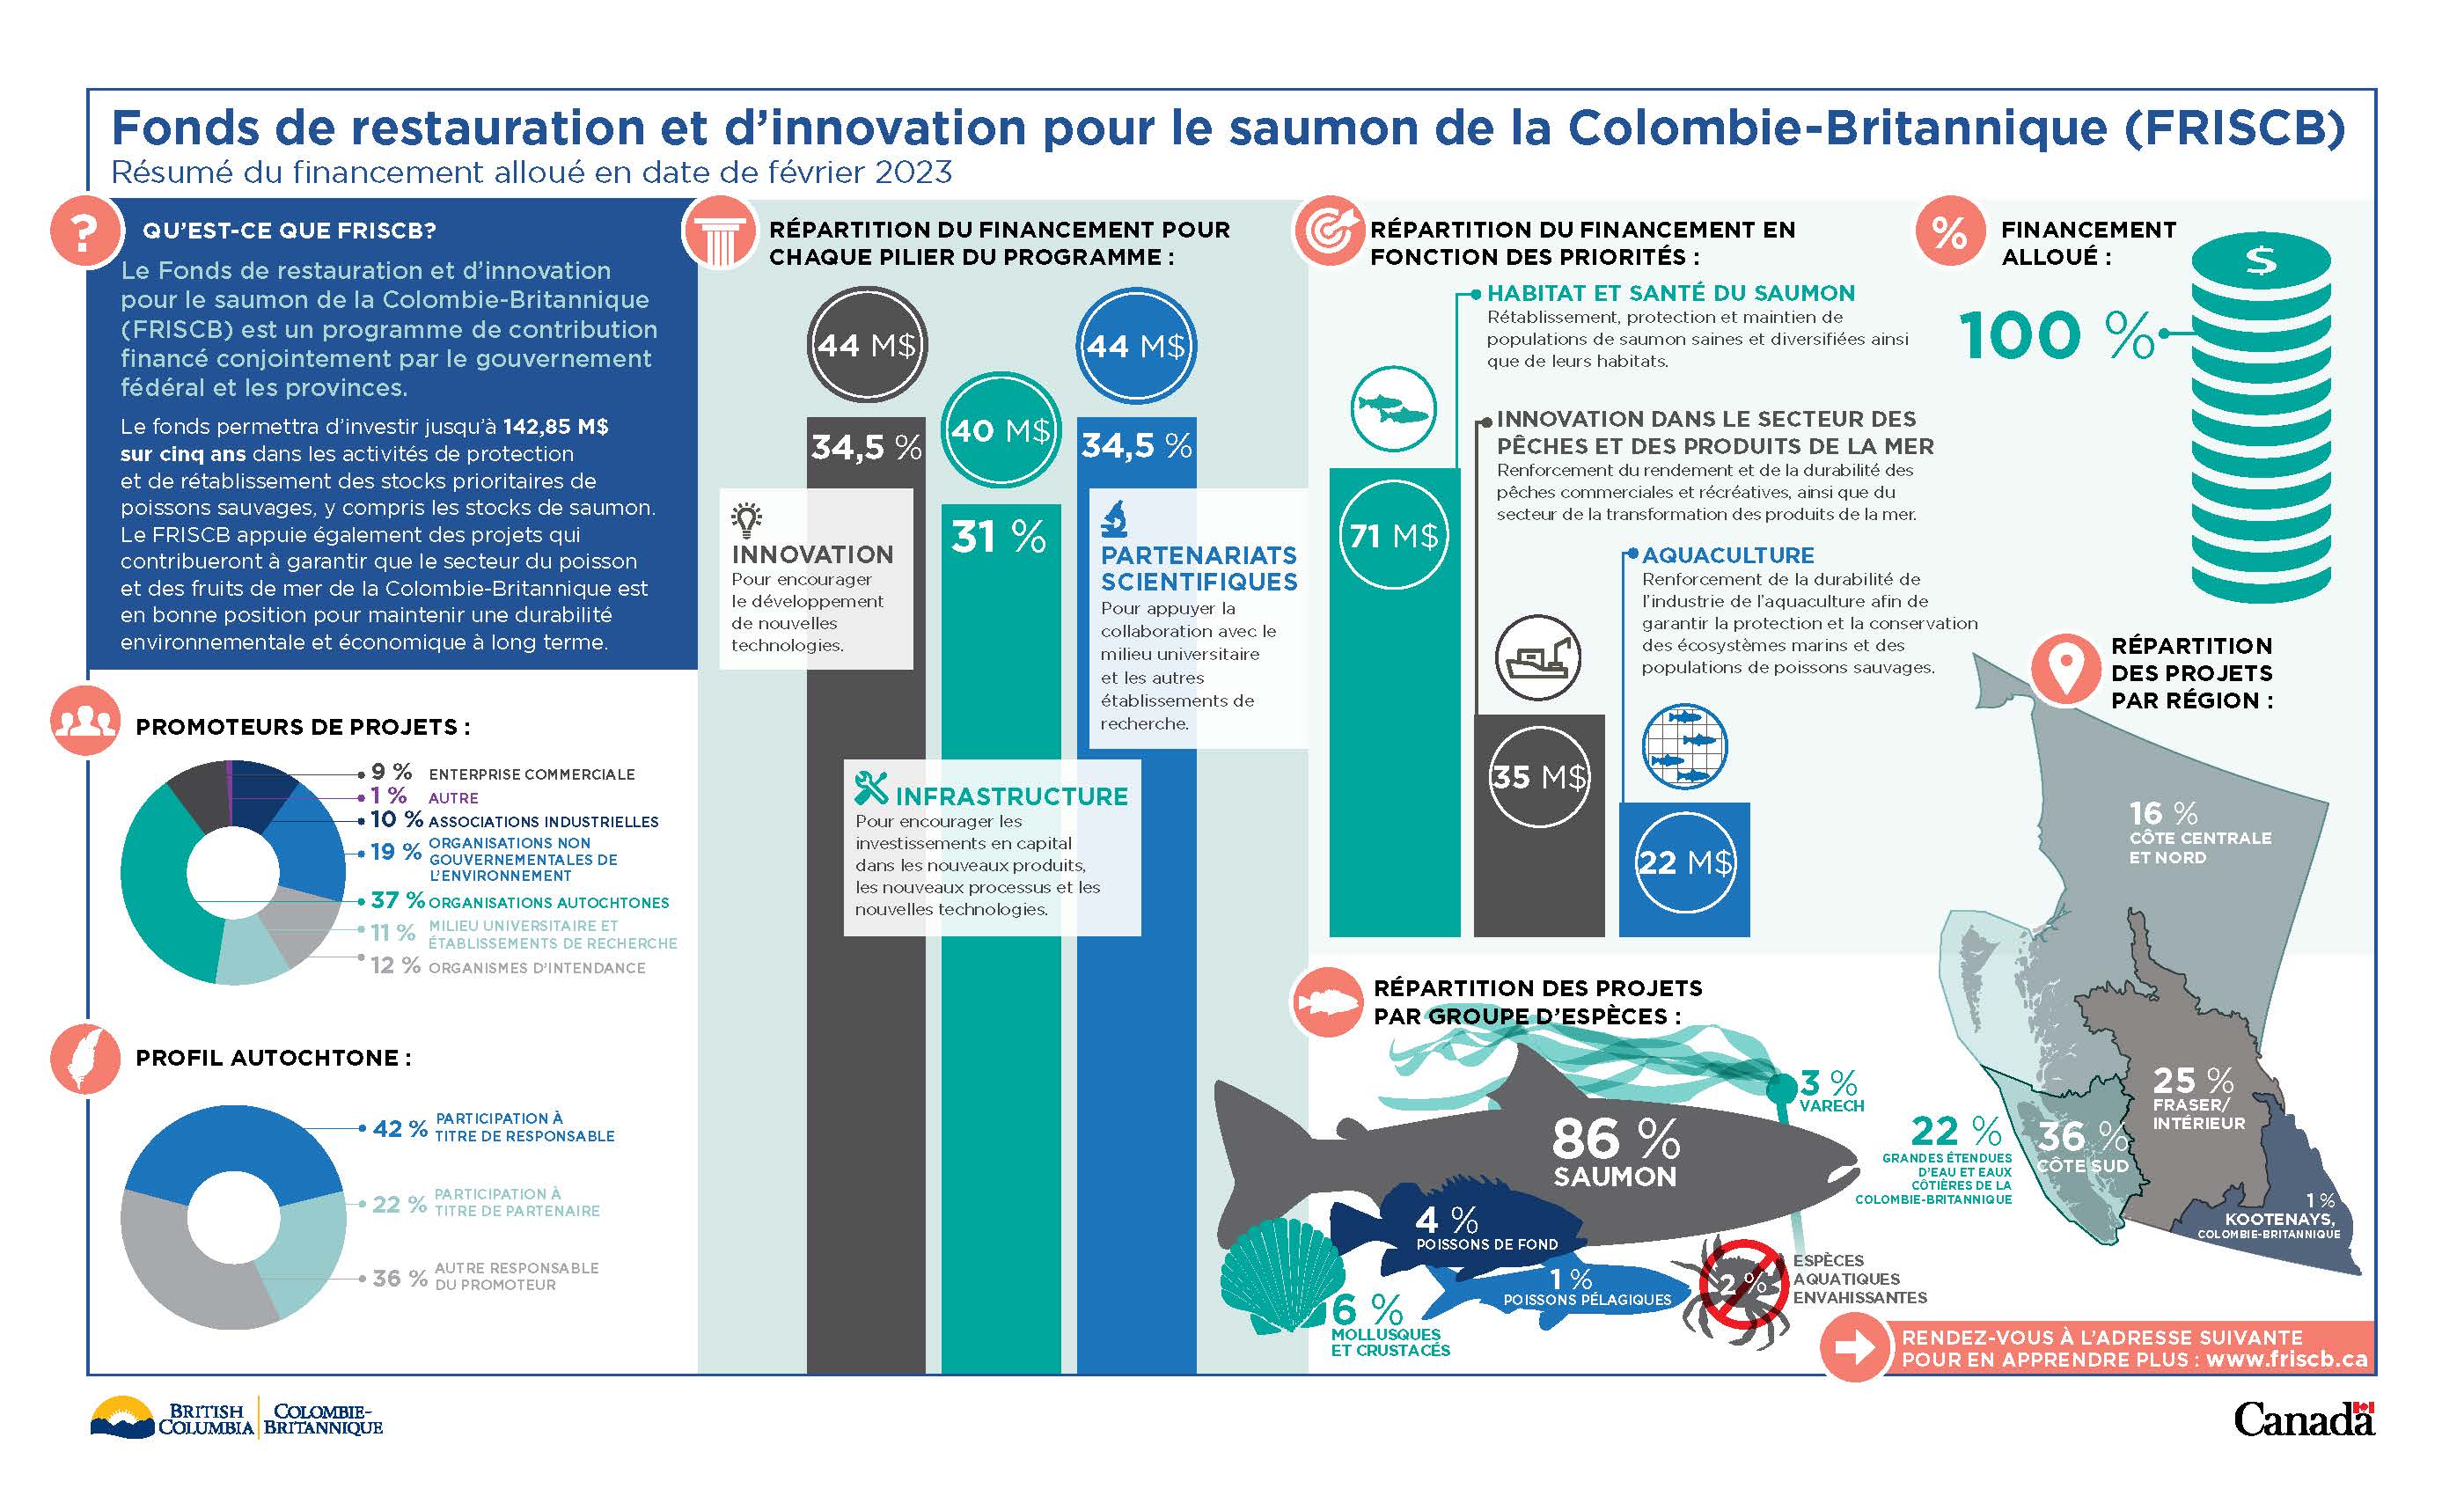 Infographie : Résumé du financement accordé au Fonds de restauration et d’innovation pour le saumon de la Colombie-Britannique en date de février 2023